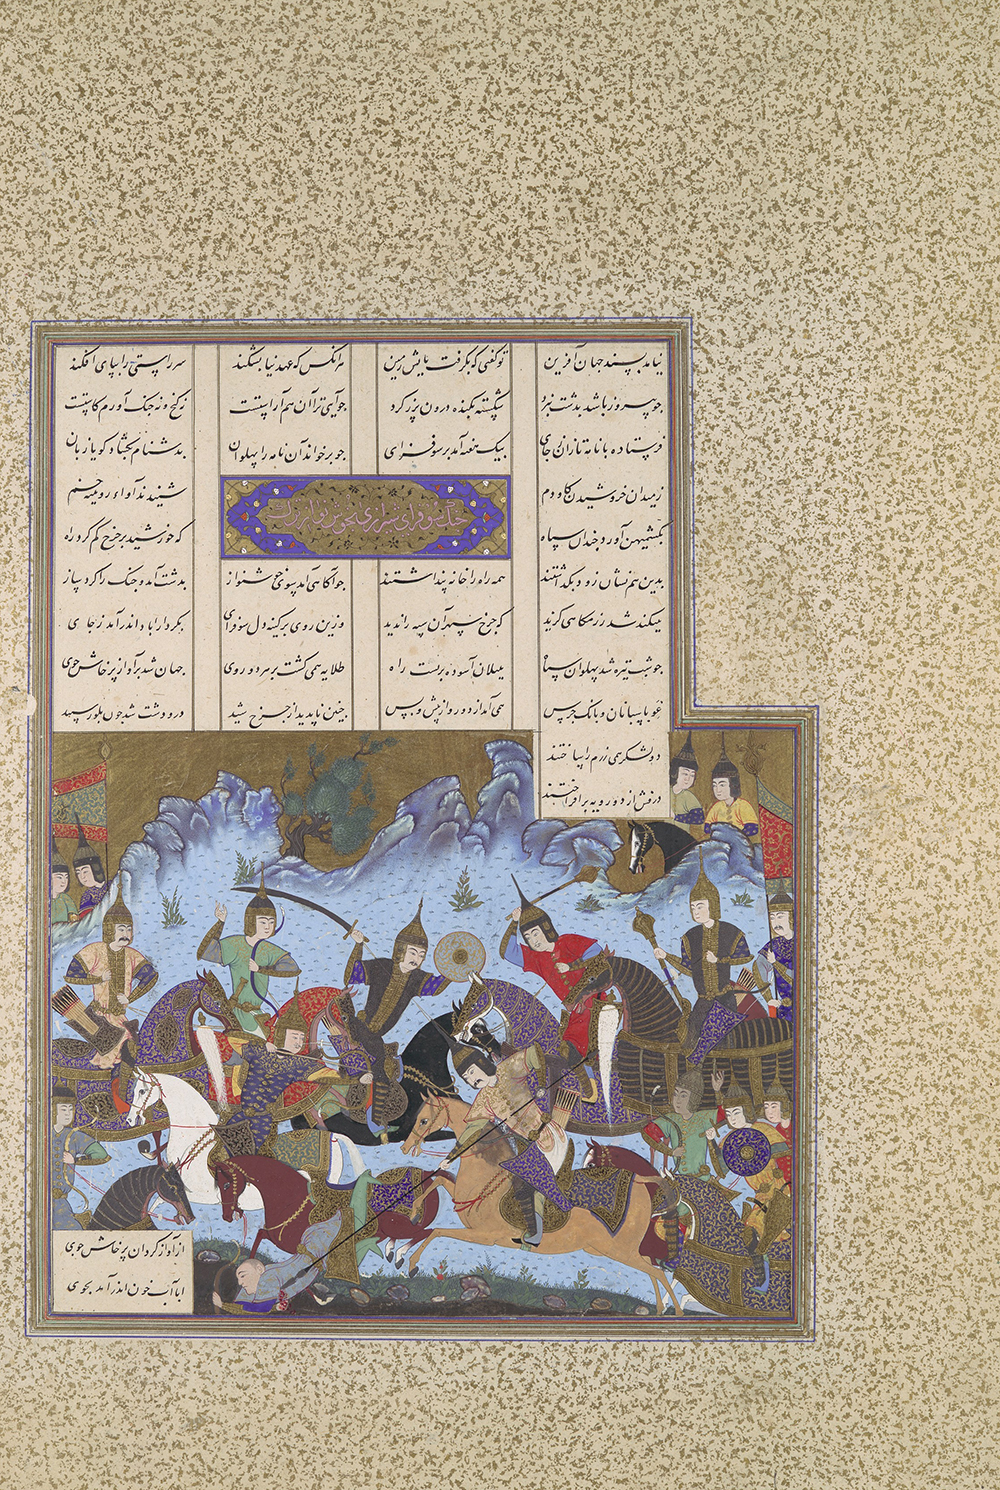 Sufarai’s Victory over the Haital, from a c. 1530 edition of Ferdowsi’s Shahnameh, by Qadimi.